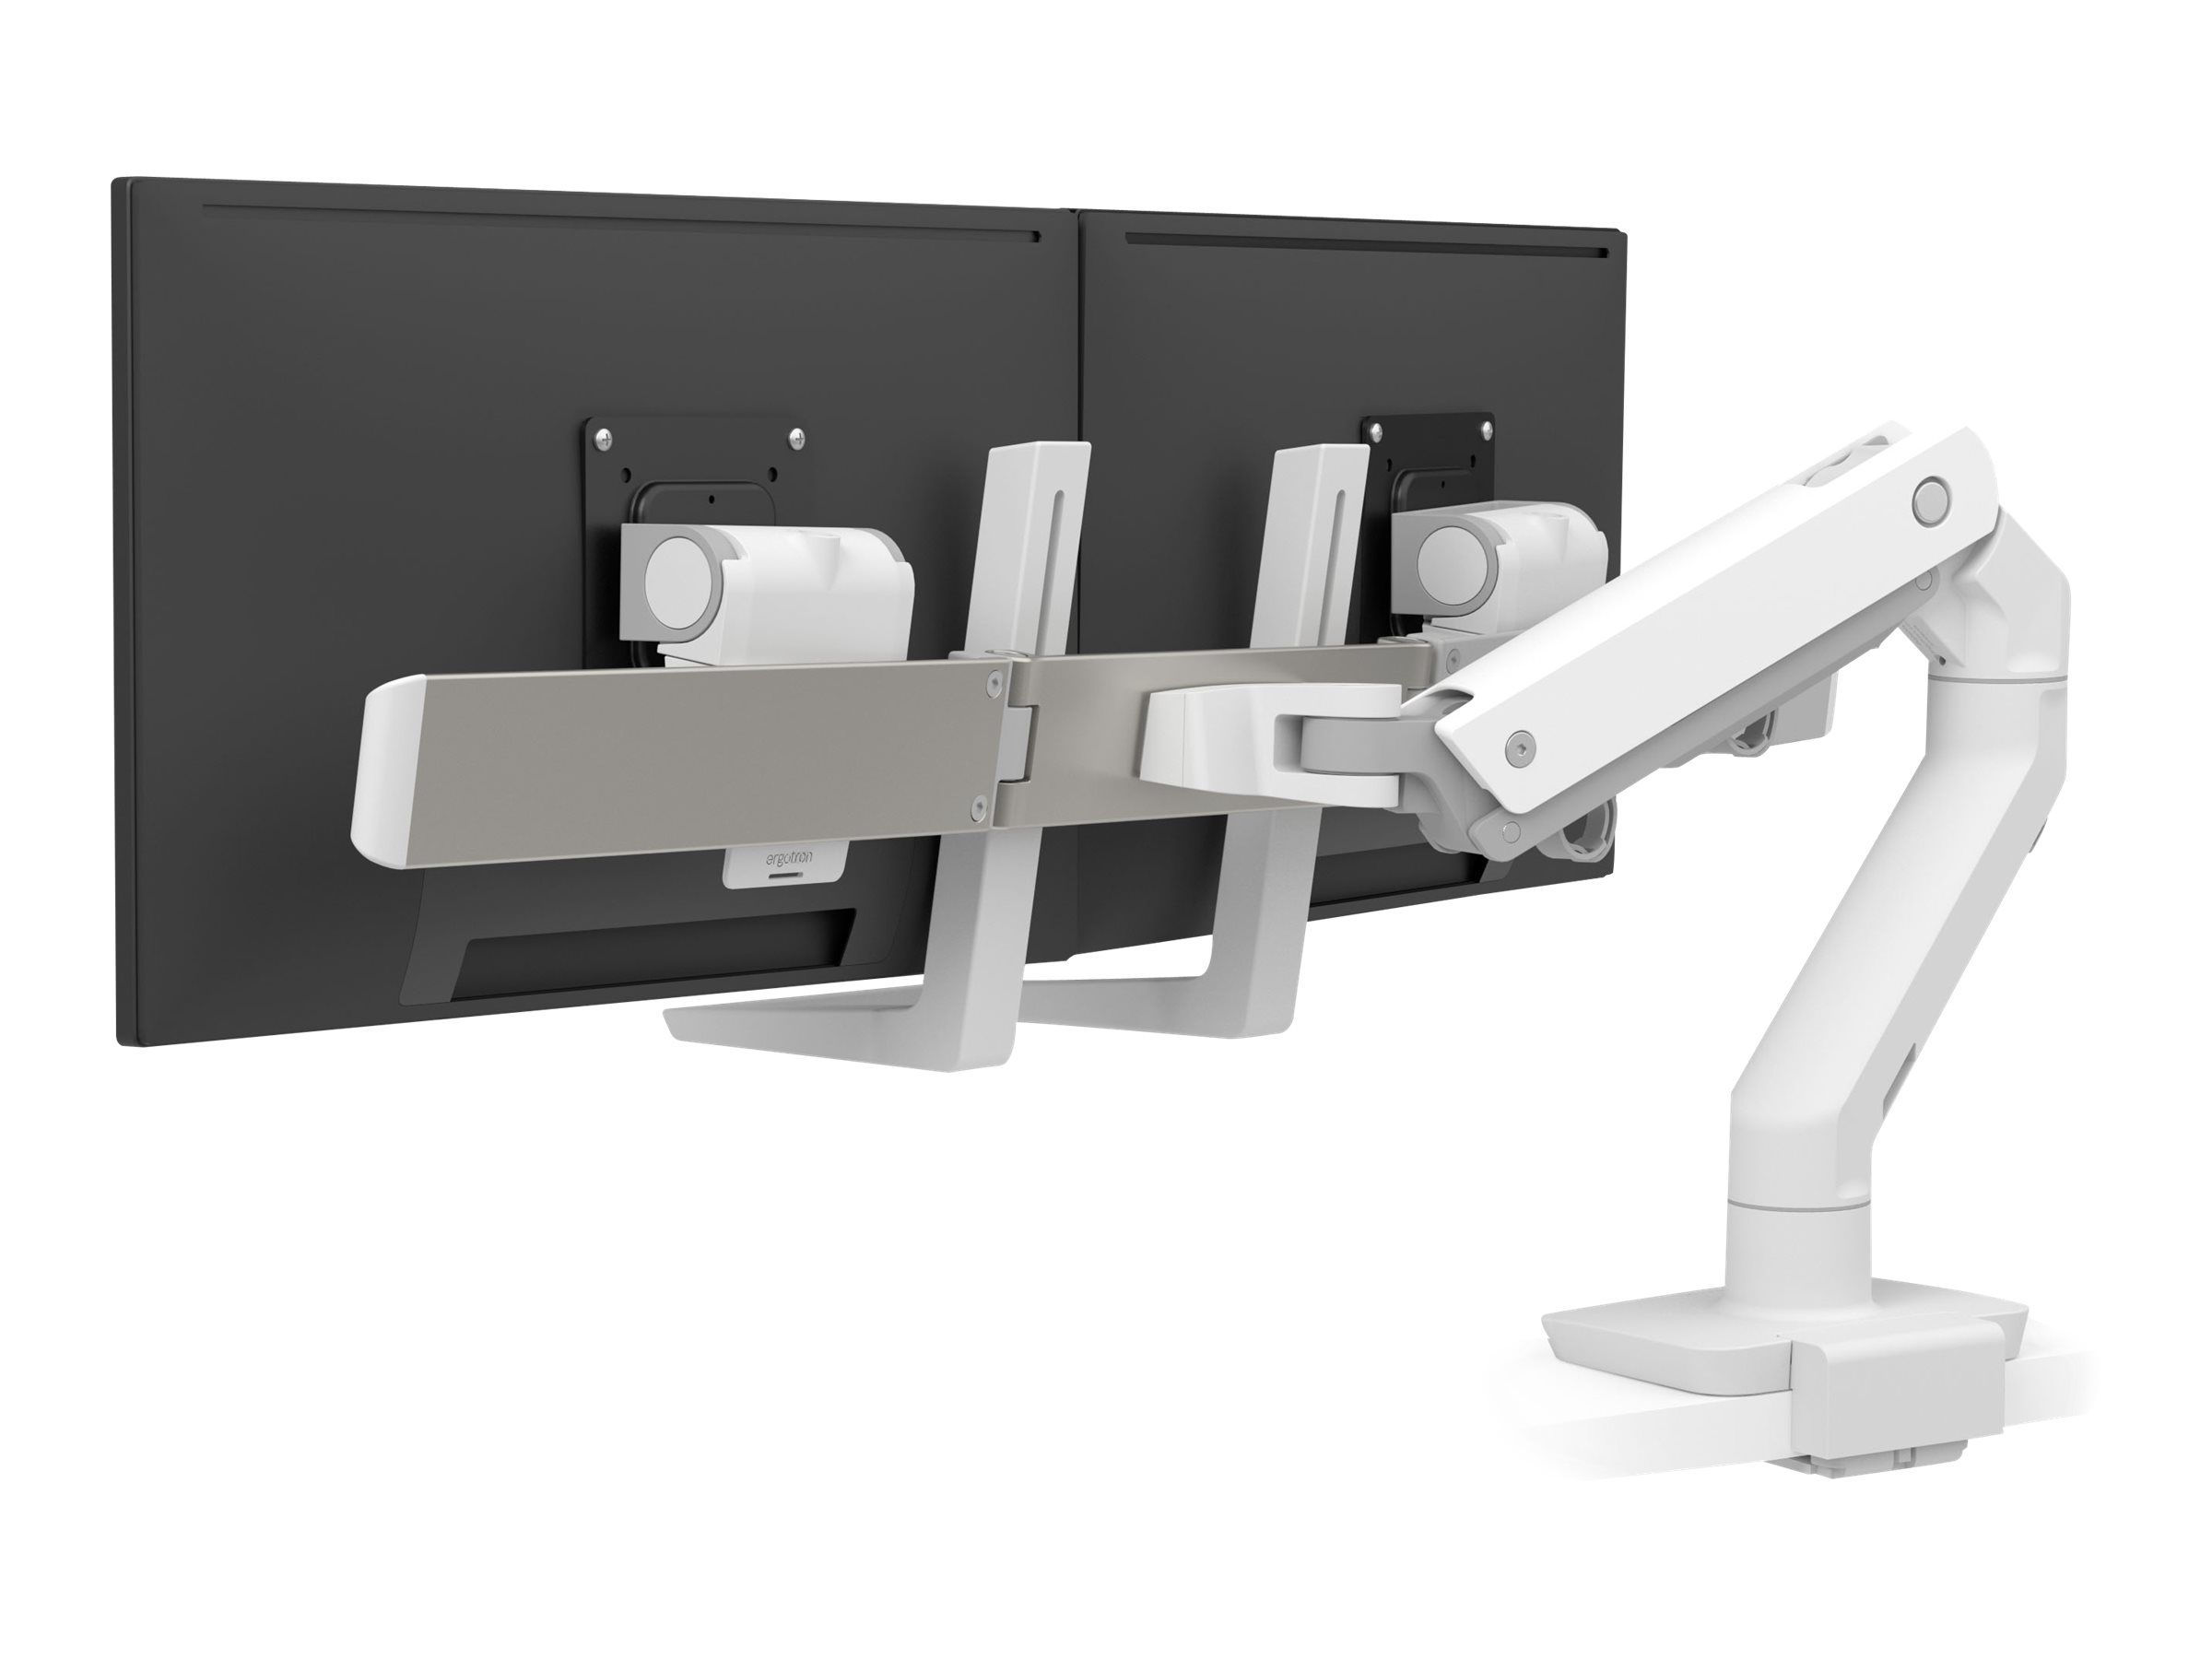 Ergotron HX - Kit de montage (poignée, bras articulé, 2 pivots, arc charnière, extension, pince en C à profil bas pour montage sur le dessus de 18-25 mm) - Technologie brevetée Constant Force - pour 2 écrans LCD - blanc - Taille d'écran : jusqu'à 32 pouces - 45-611-216 - Accessoires pour écran